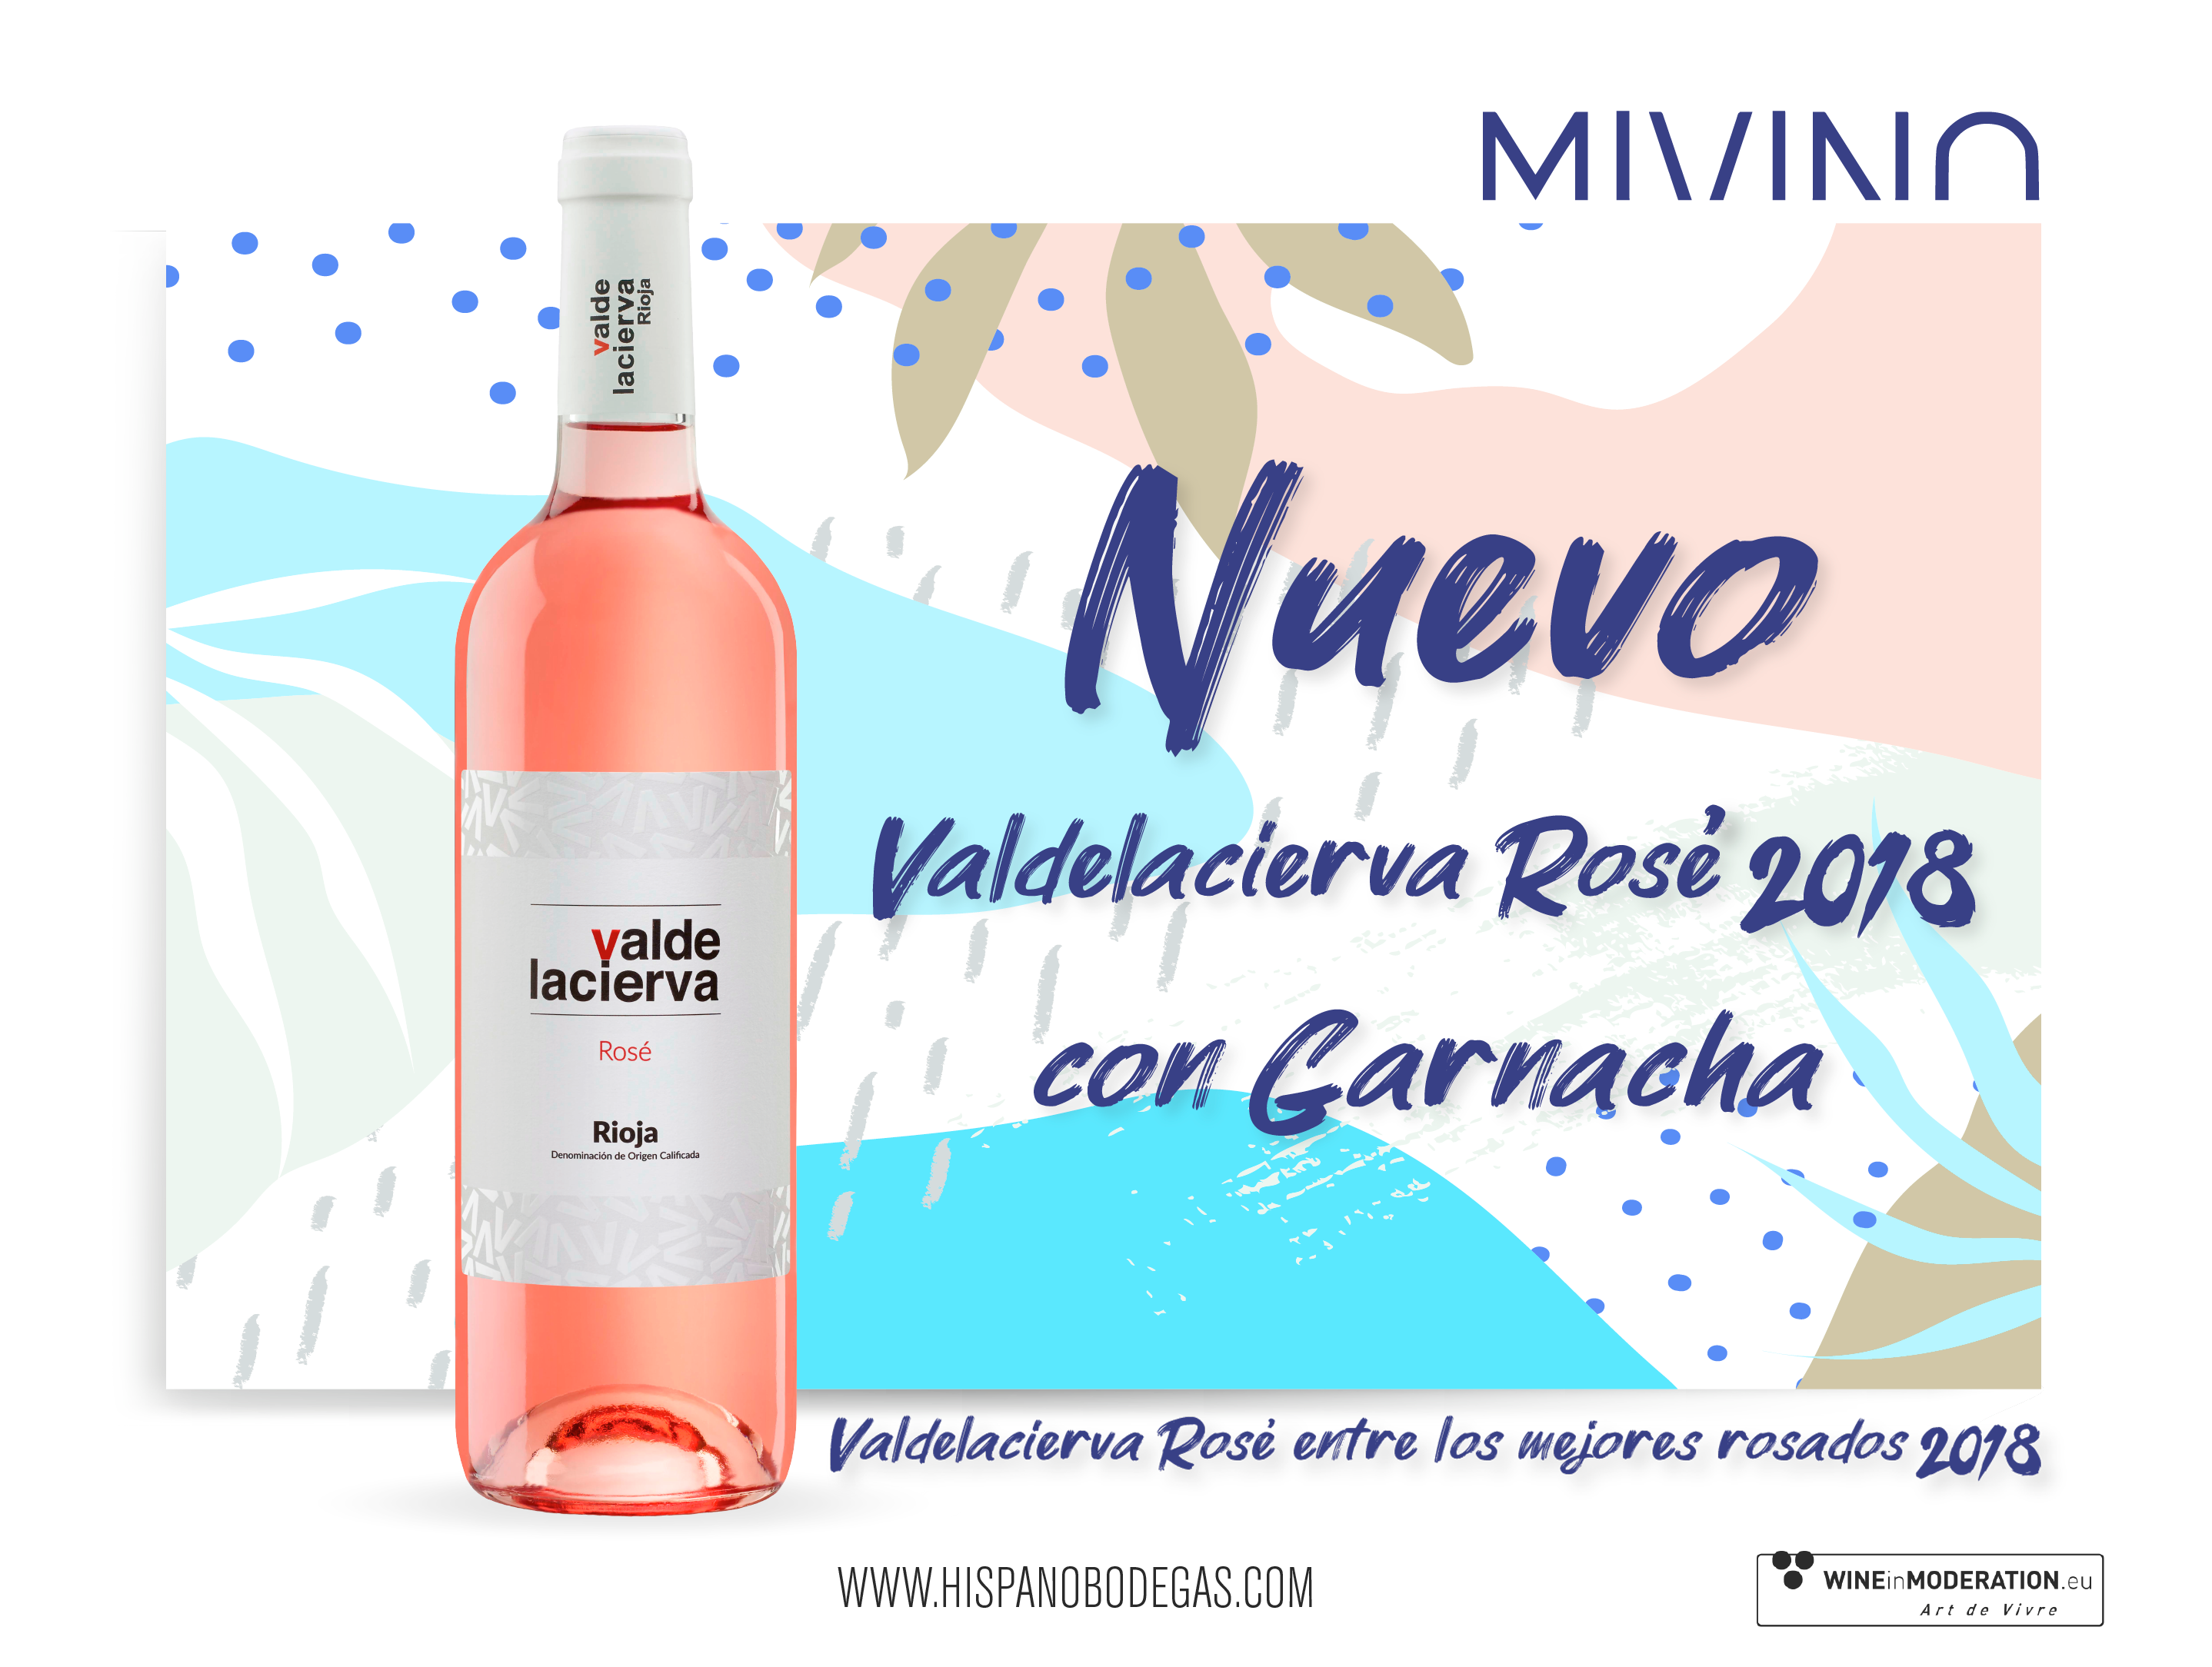 Valdelacierva rosé, entre los mejores rosados 2018